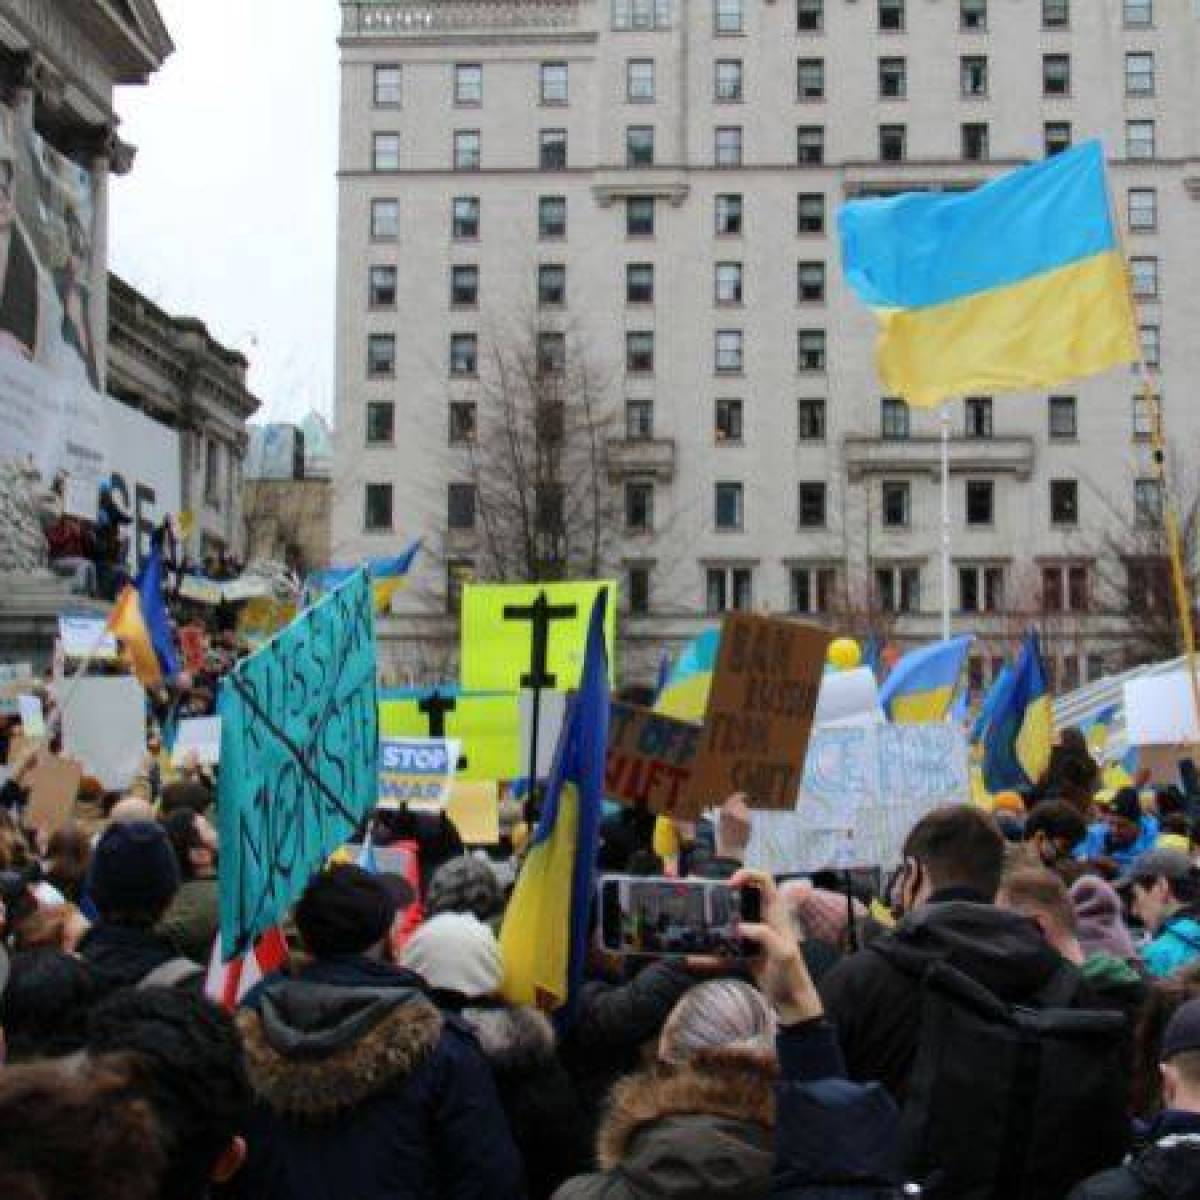 Zaangażowanie międzynarodowe: Rola społeczności międzynarodowej w konflikcie na Ukrainie